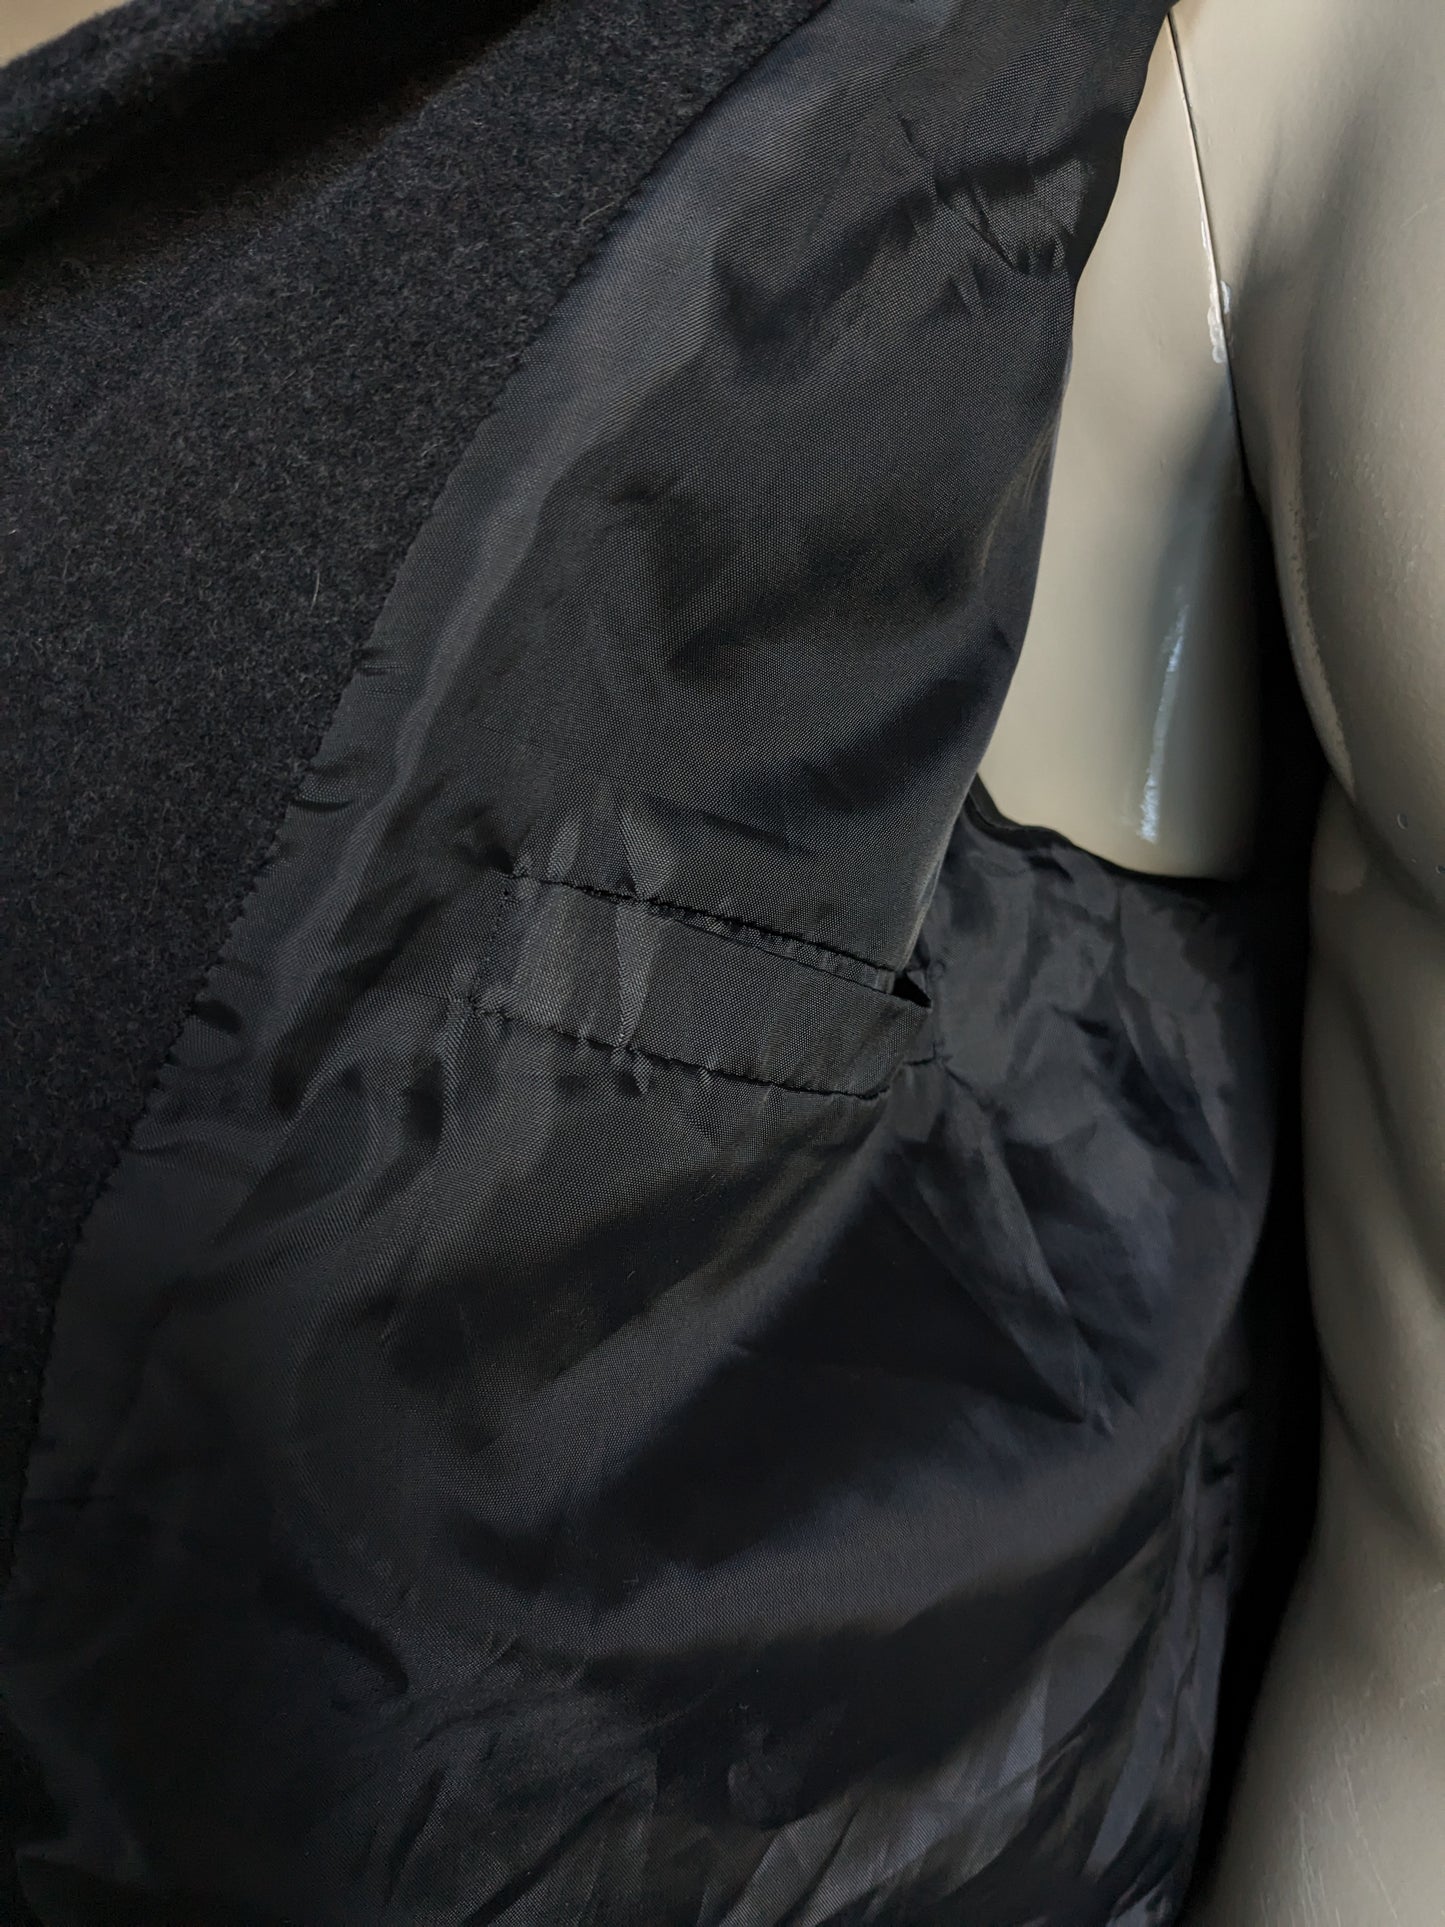 Separe una chaqueta media larga de lana Martin con botones y aplicaciones de cremallera. Gris oscuro. Tamaño 52 / L.